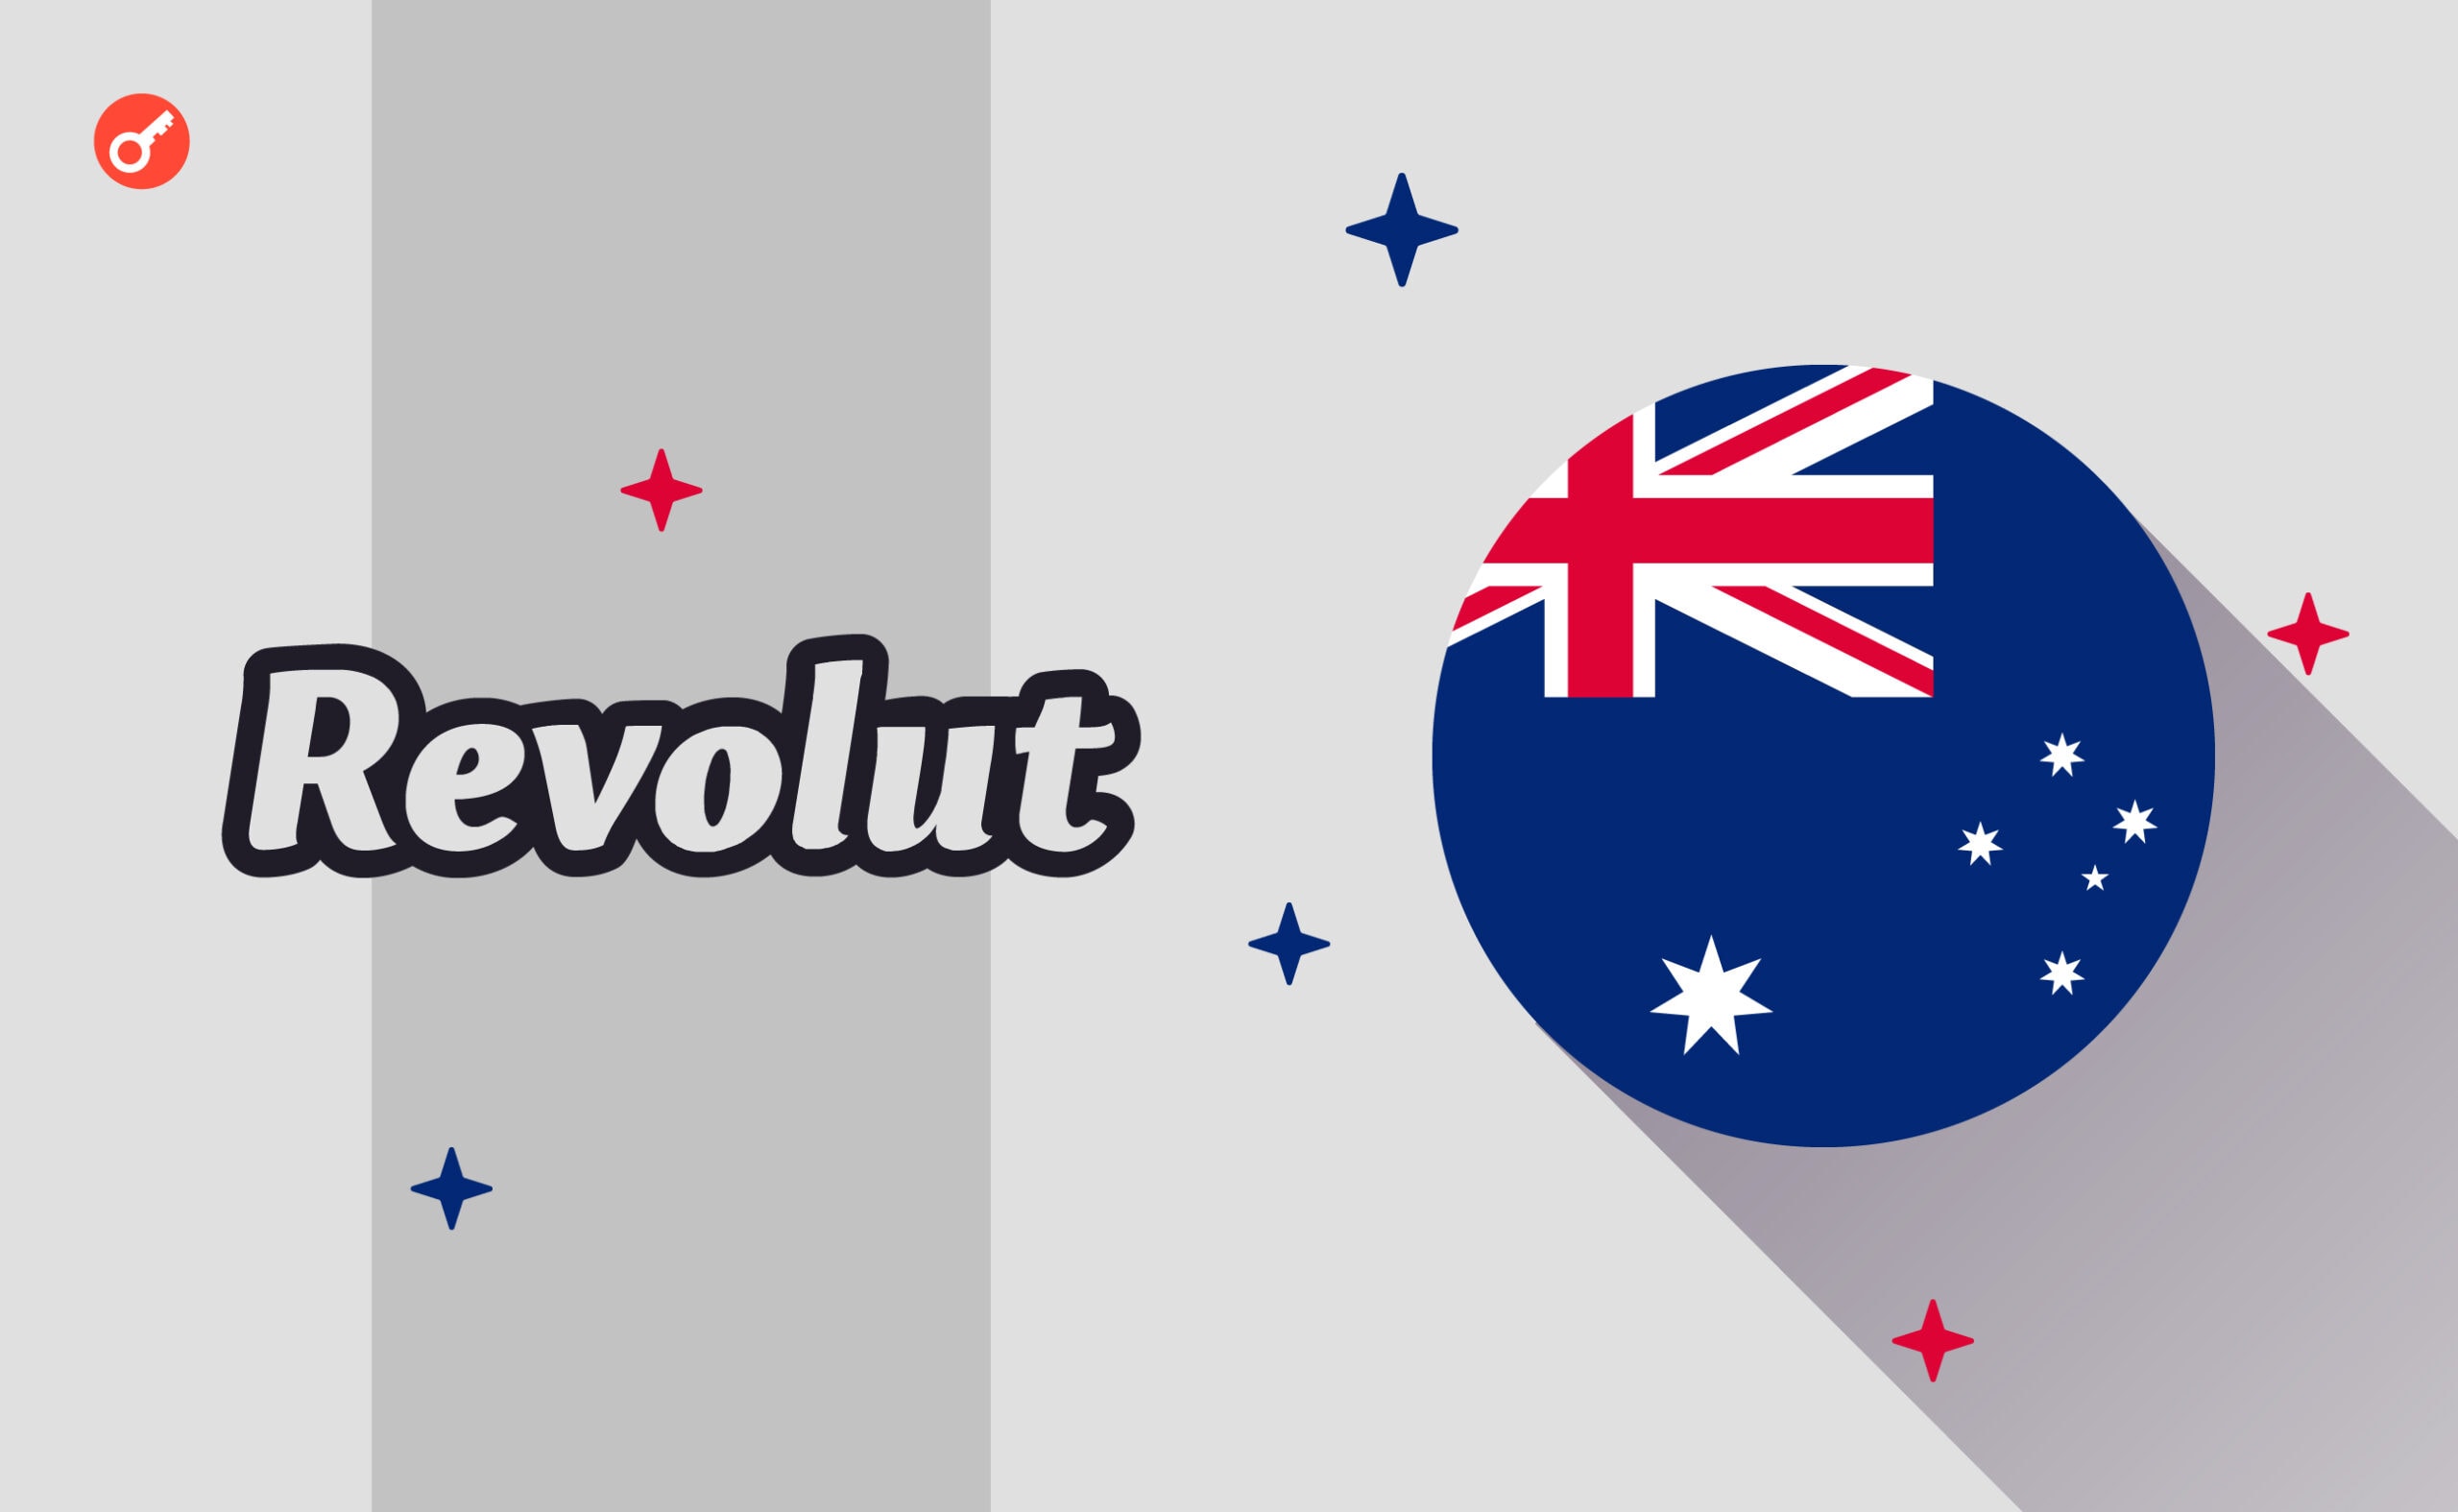 Revolut відкриває бізнес-рахунки в Австралії. Головний колаж новини.